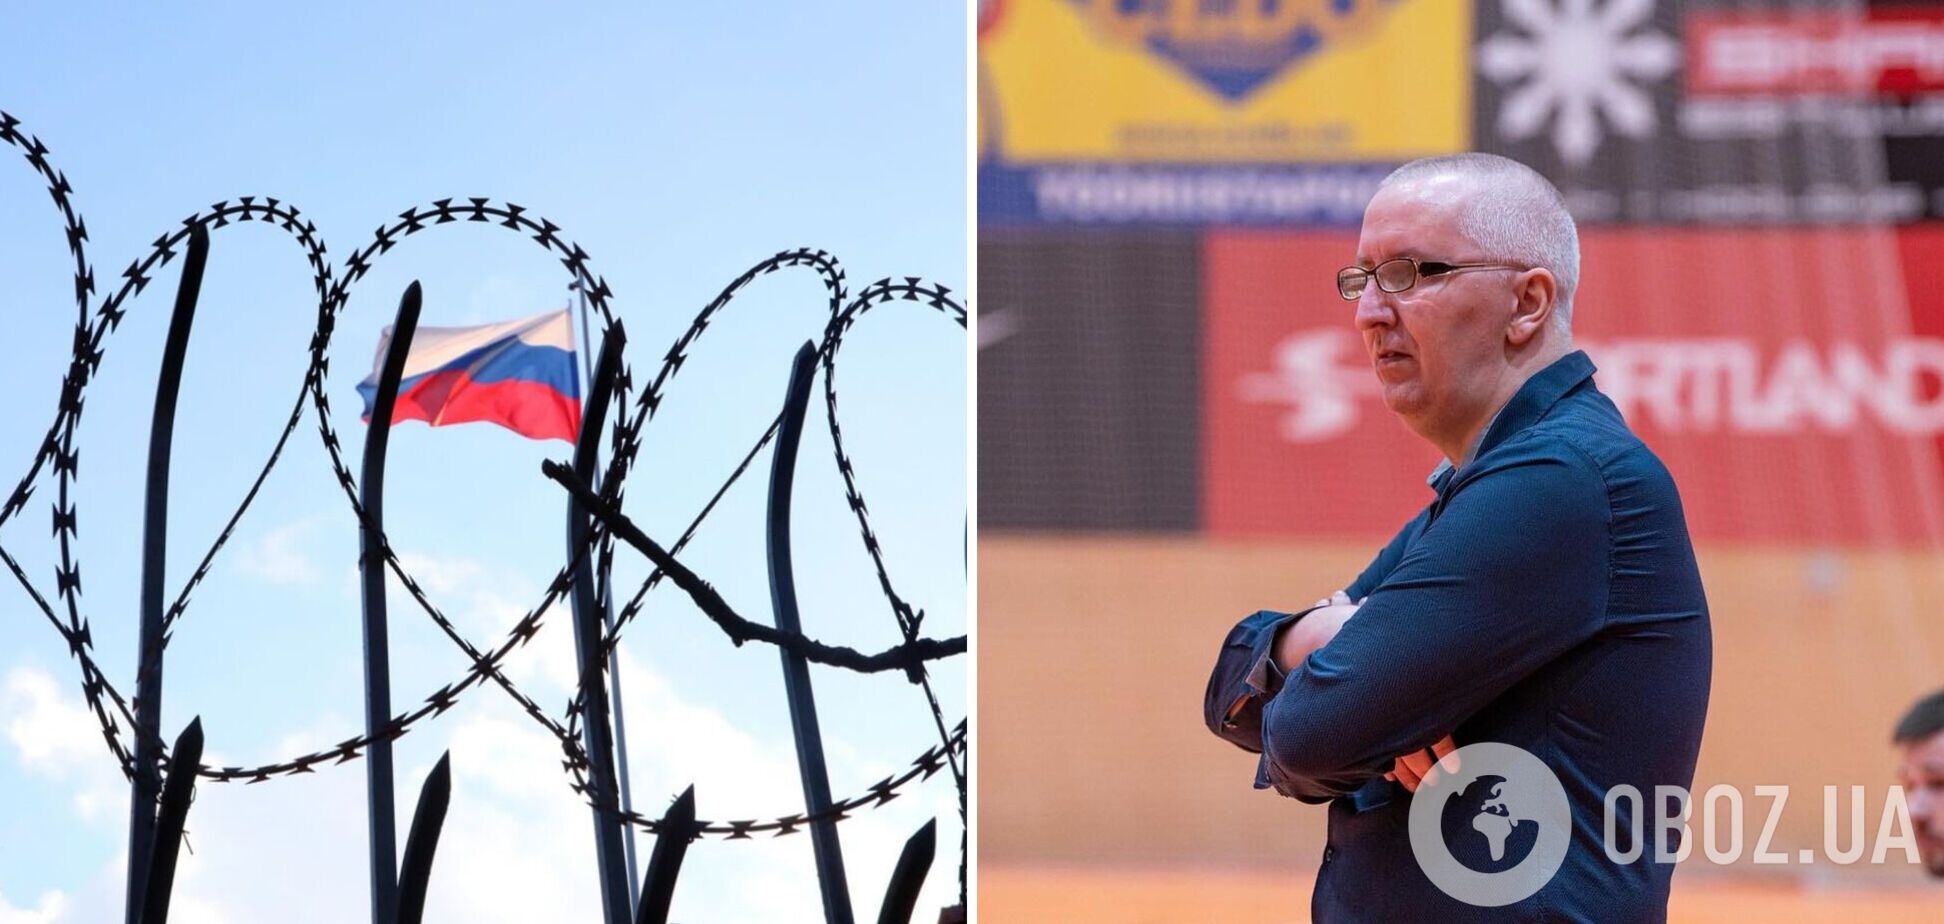 'Важко знайти роботу': сербський тренер, якого вигнали з Естонії за підтримку Путіна, благає про допомогу